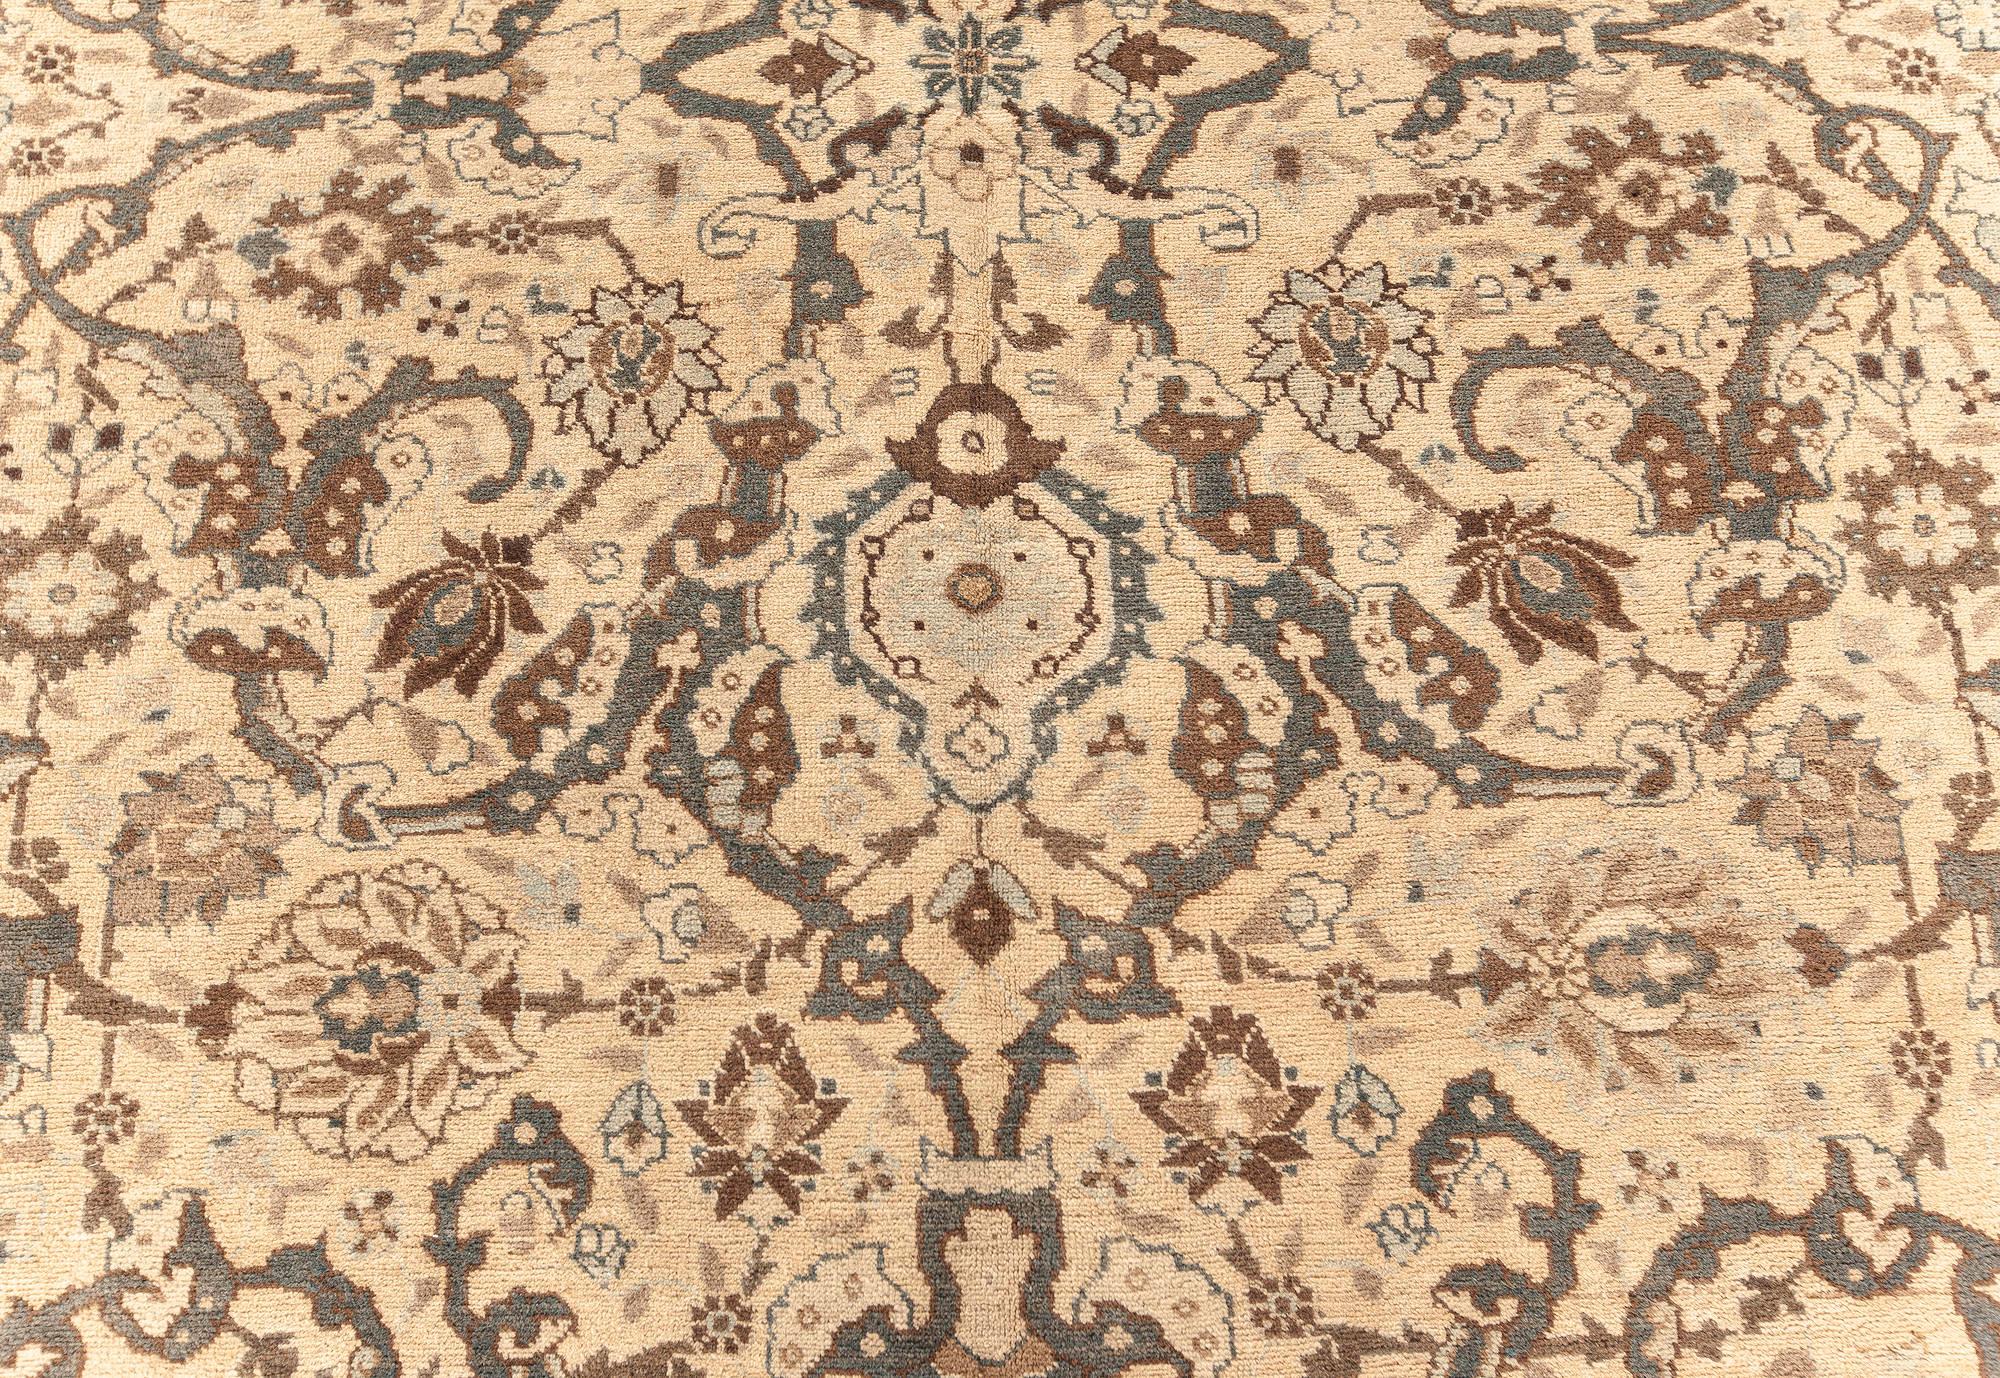 Authentique tapis persan Tabriz en beige, bleu, marron et gris
Taille : 7'10